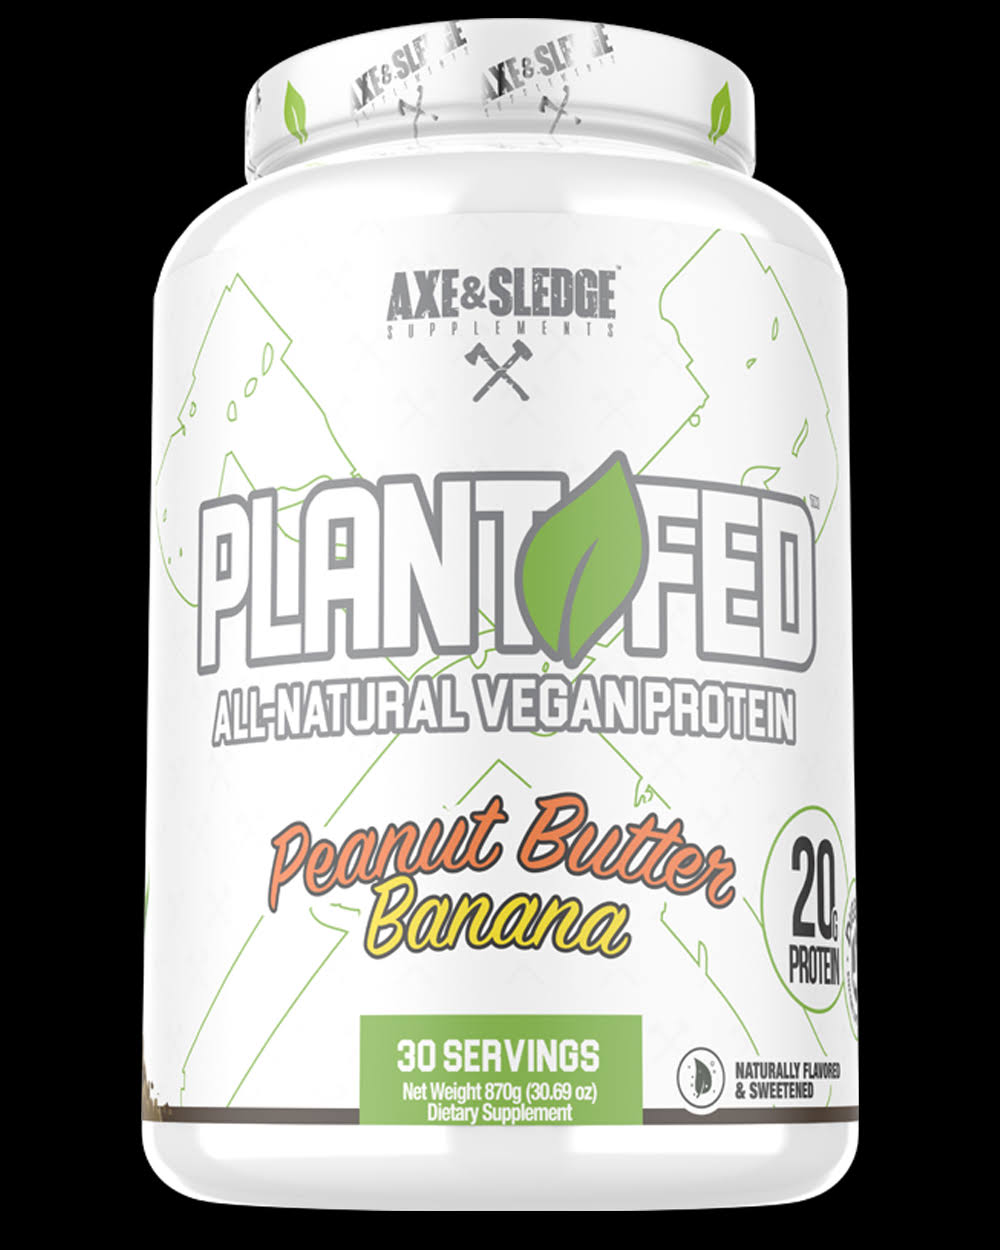 Axe & Sledge Plant Fed Vegan Protein Peanut Butter Banana - 30 Servings